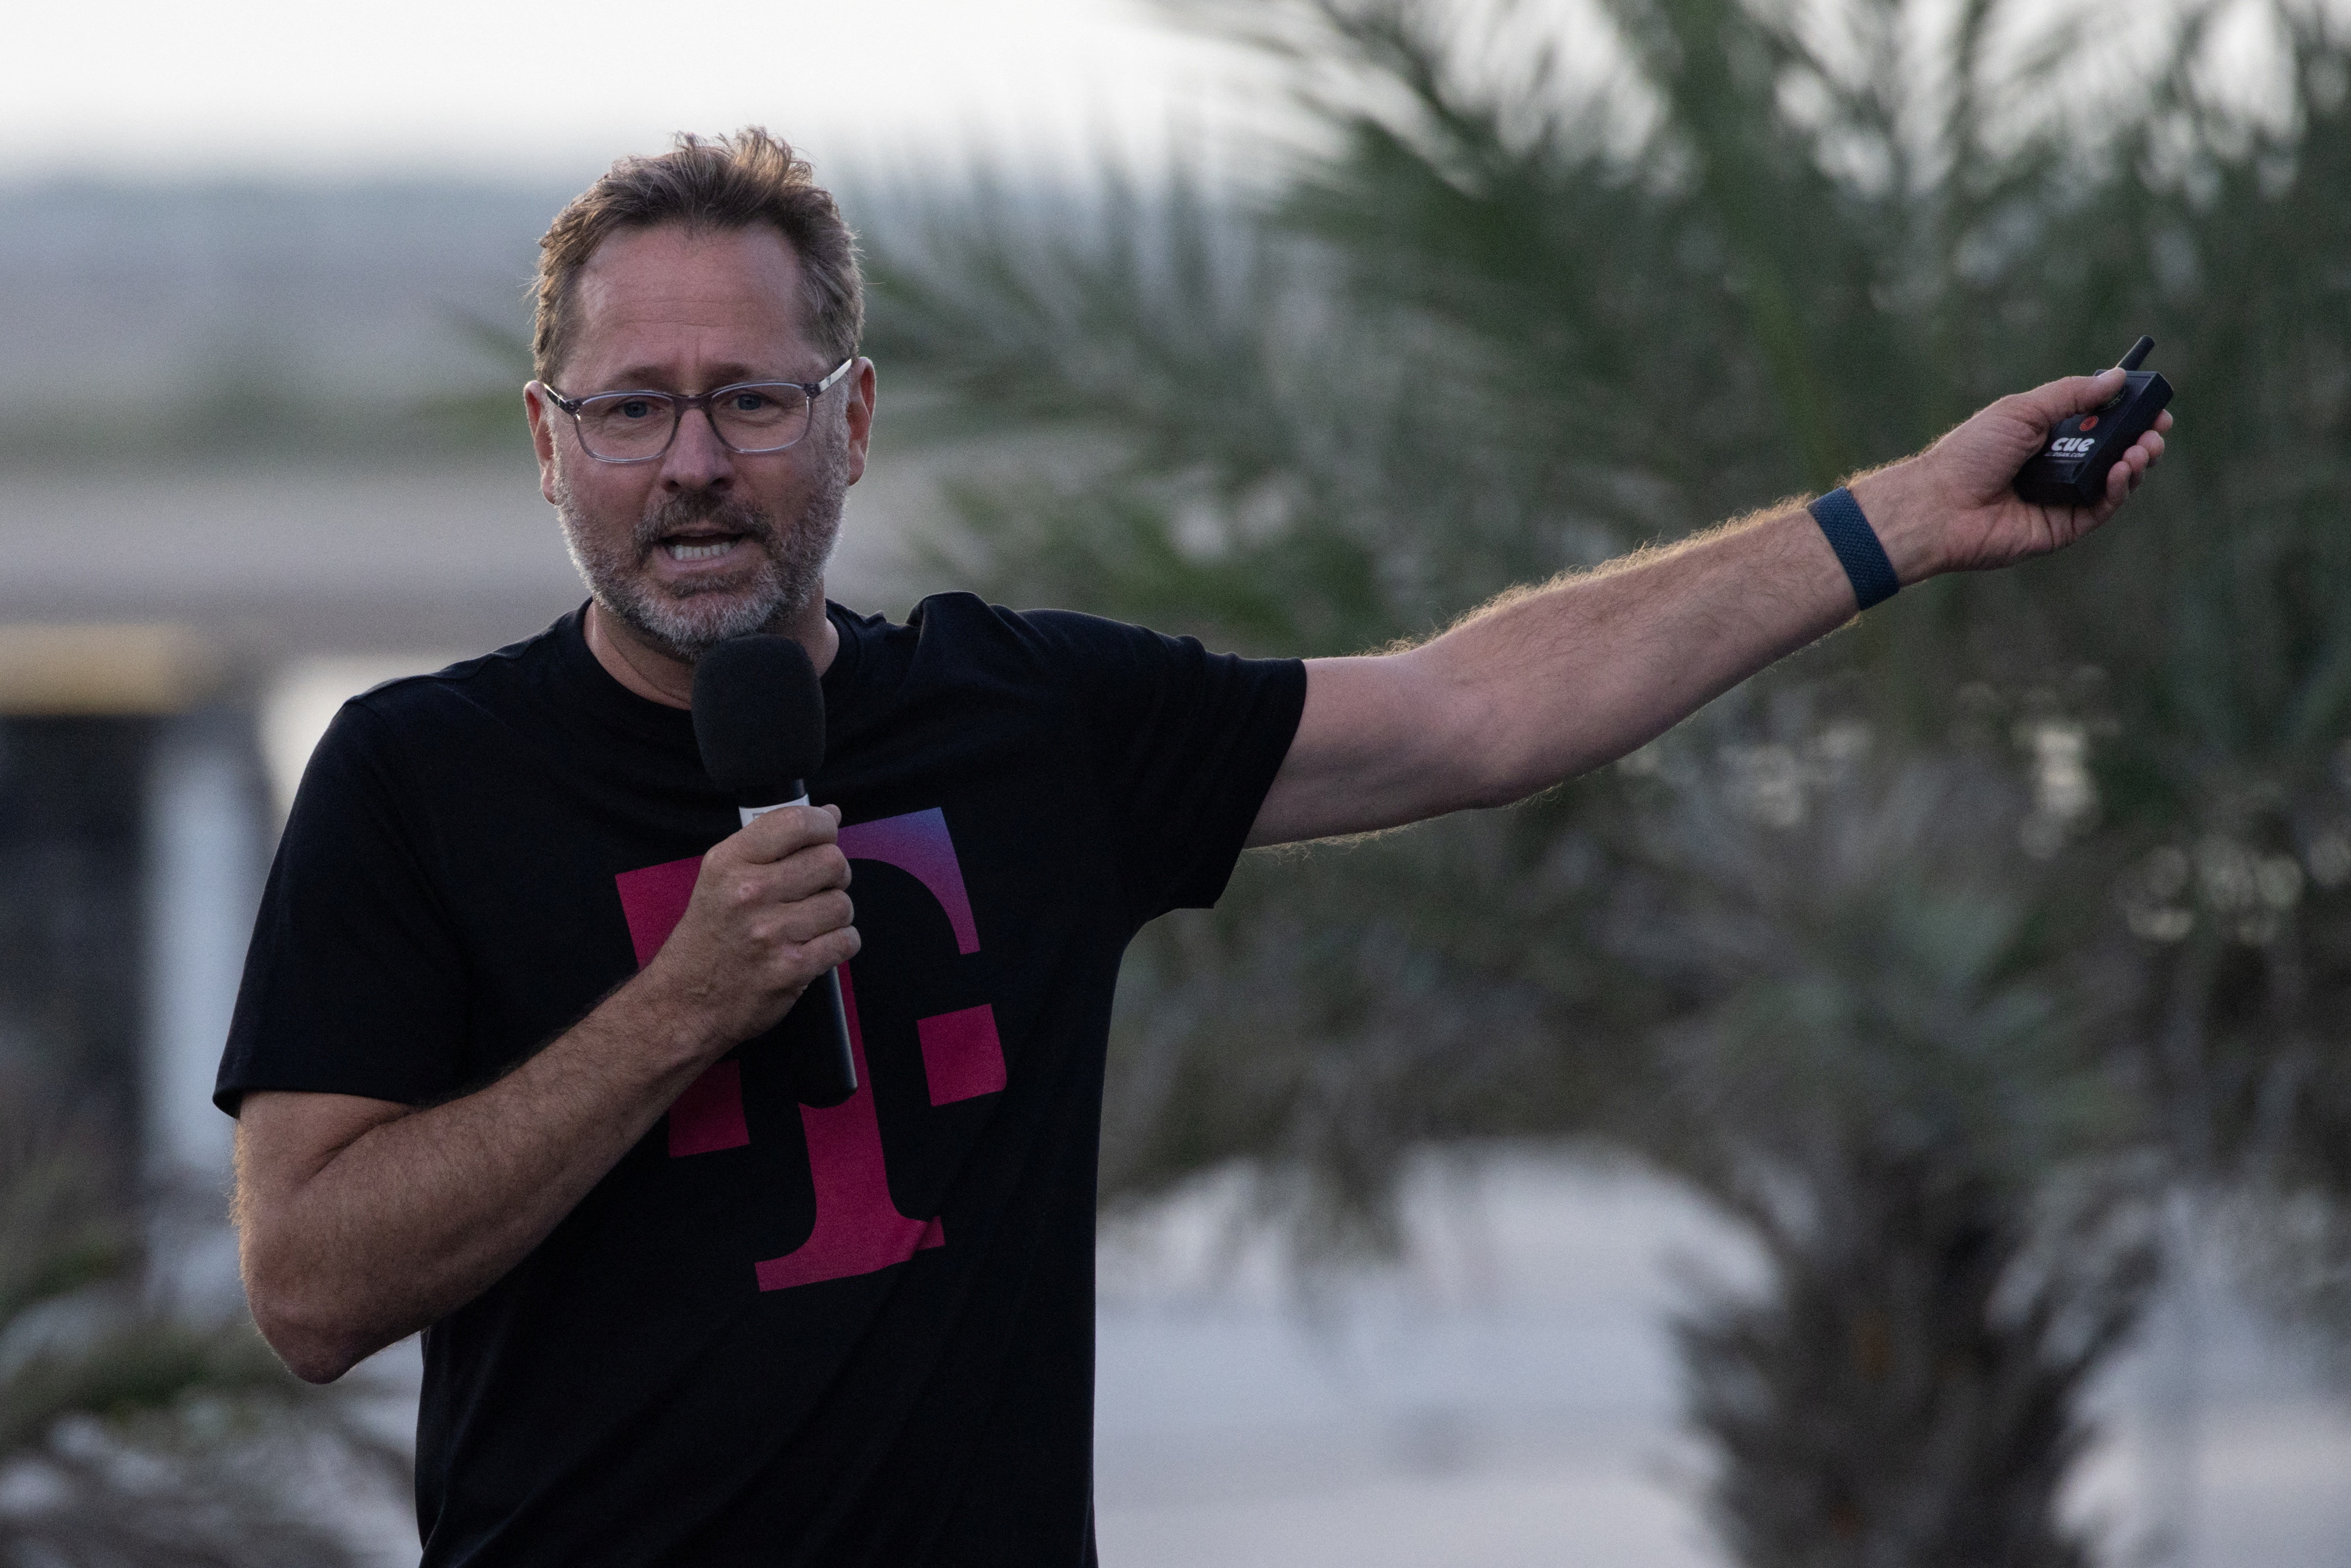 El CEO de T-Mobile, Sievert, hace gestos durante una conferencia de prensa en SpaceX Starbase en Brownsville, Texas